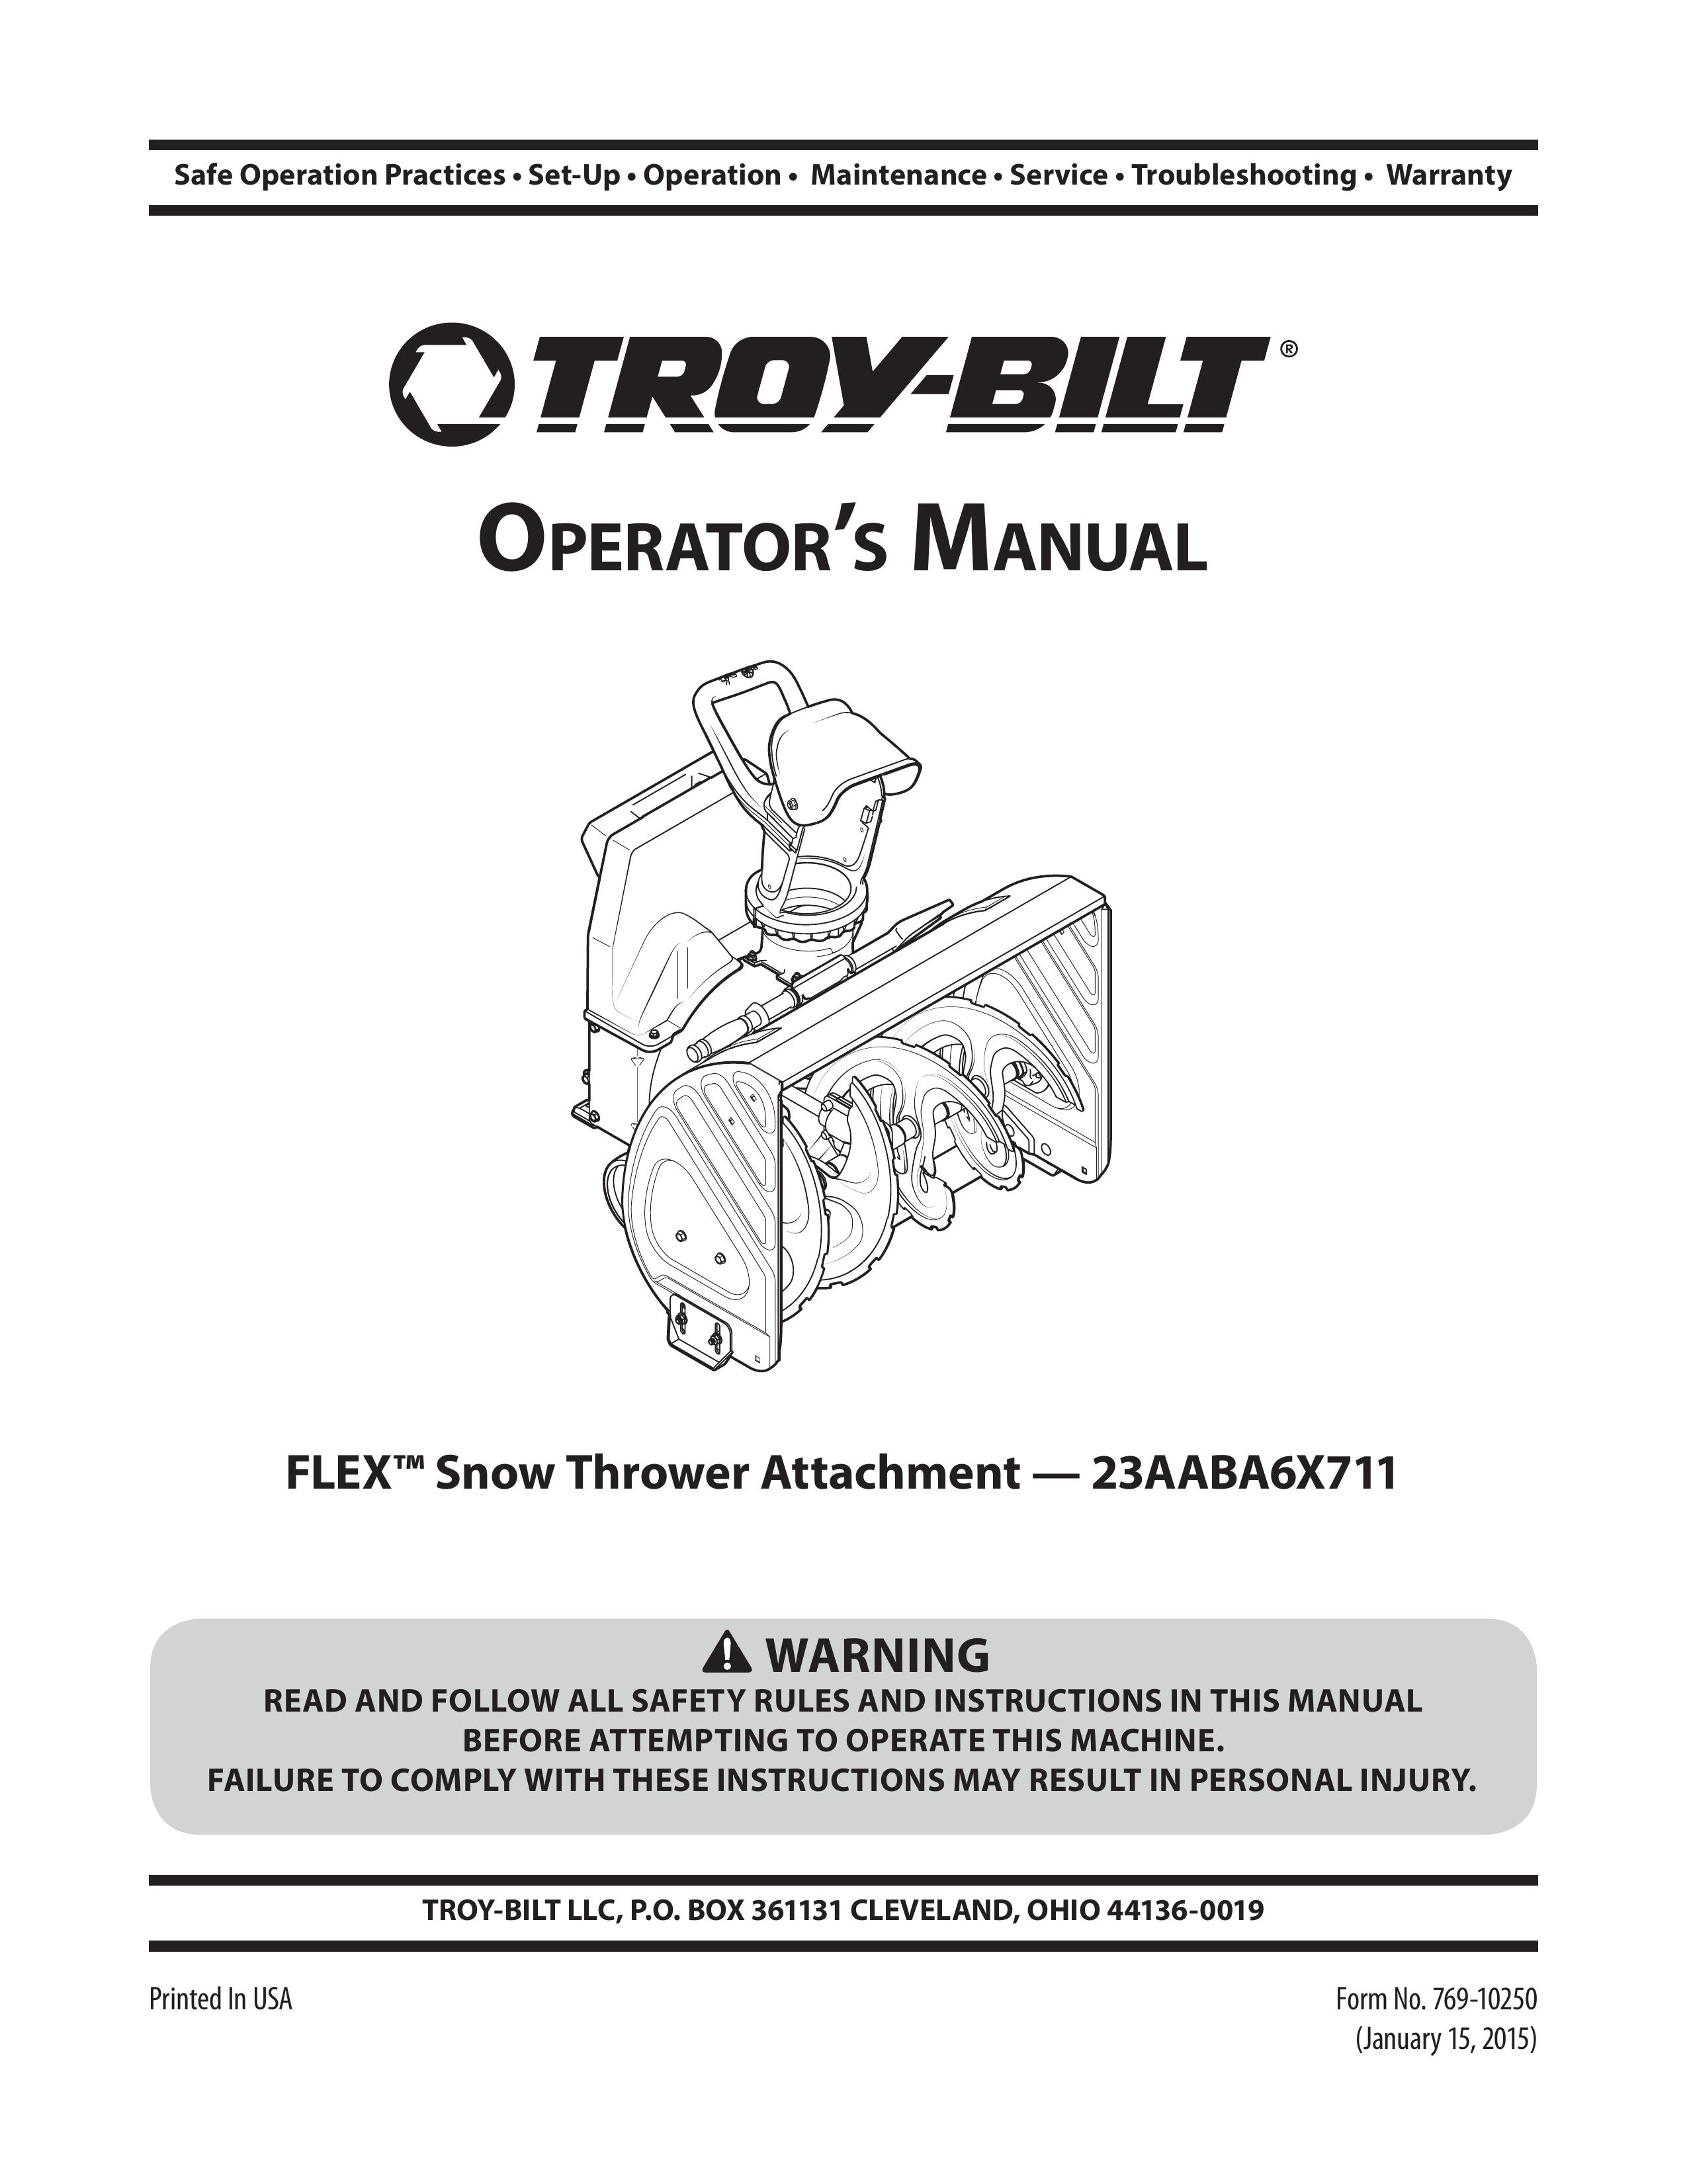 Troy-Bilt 23AABA6X711 Snow Blower User Manual